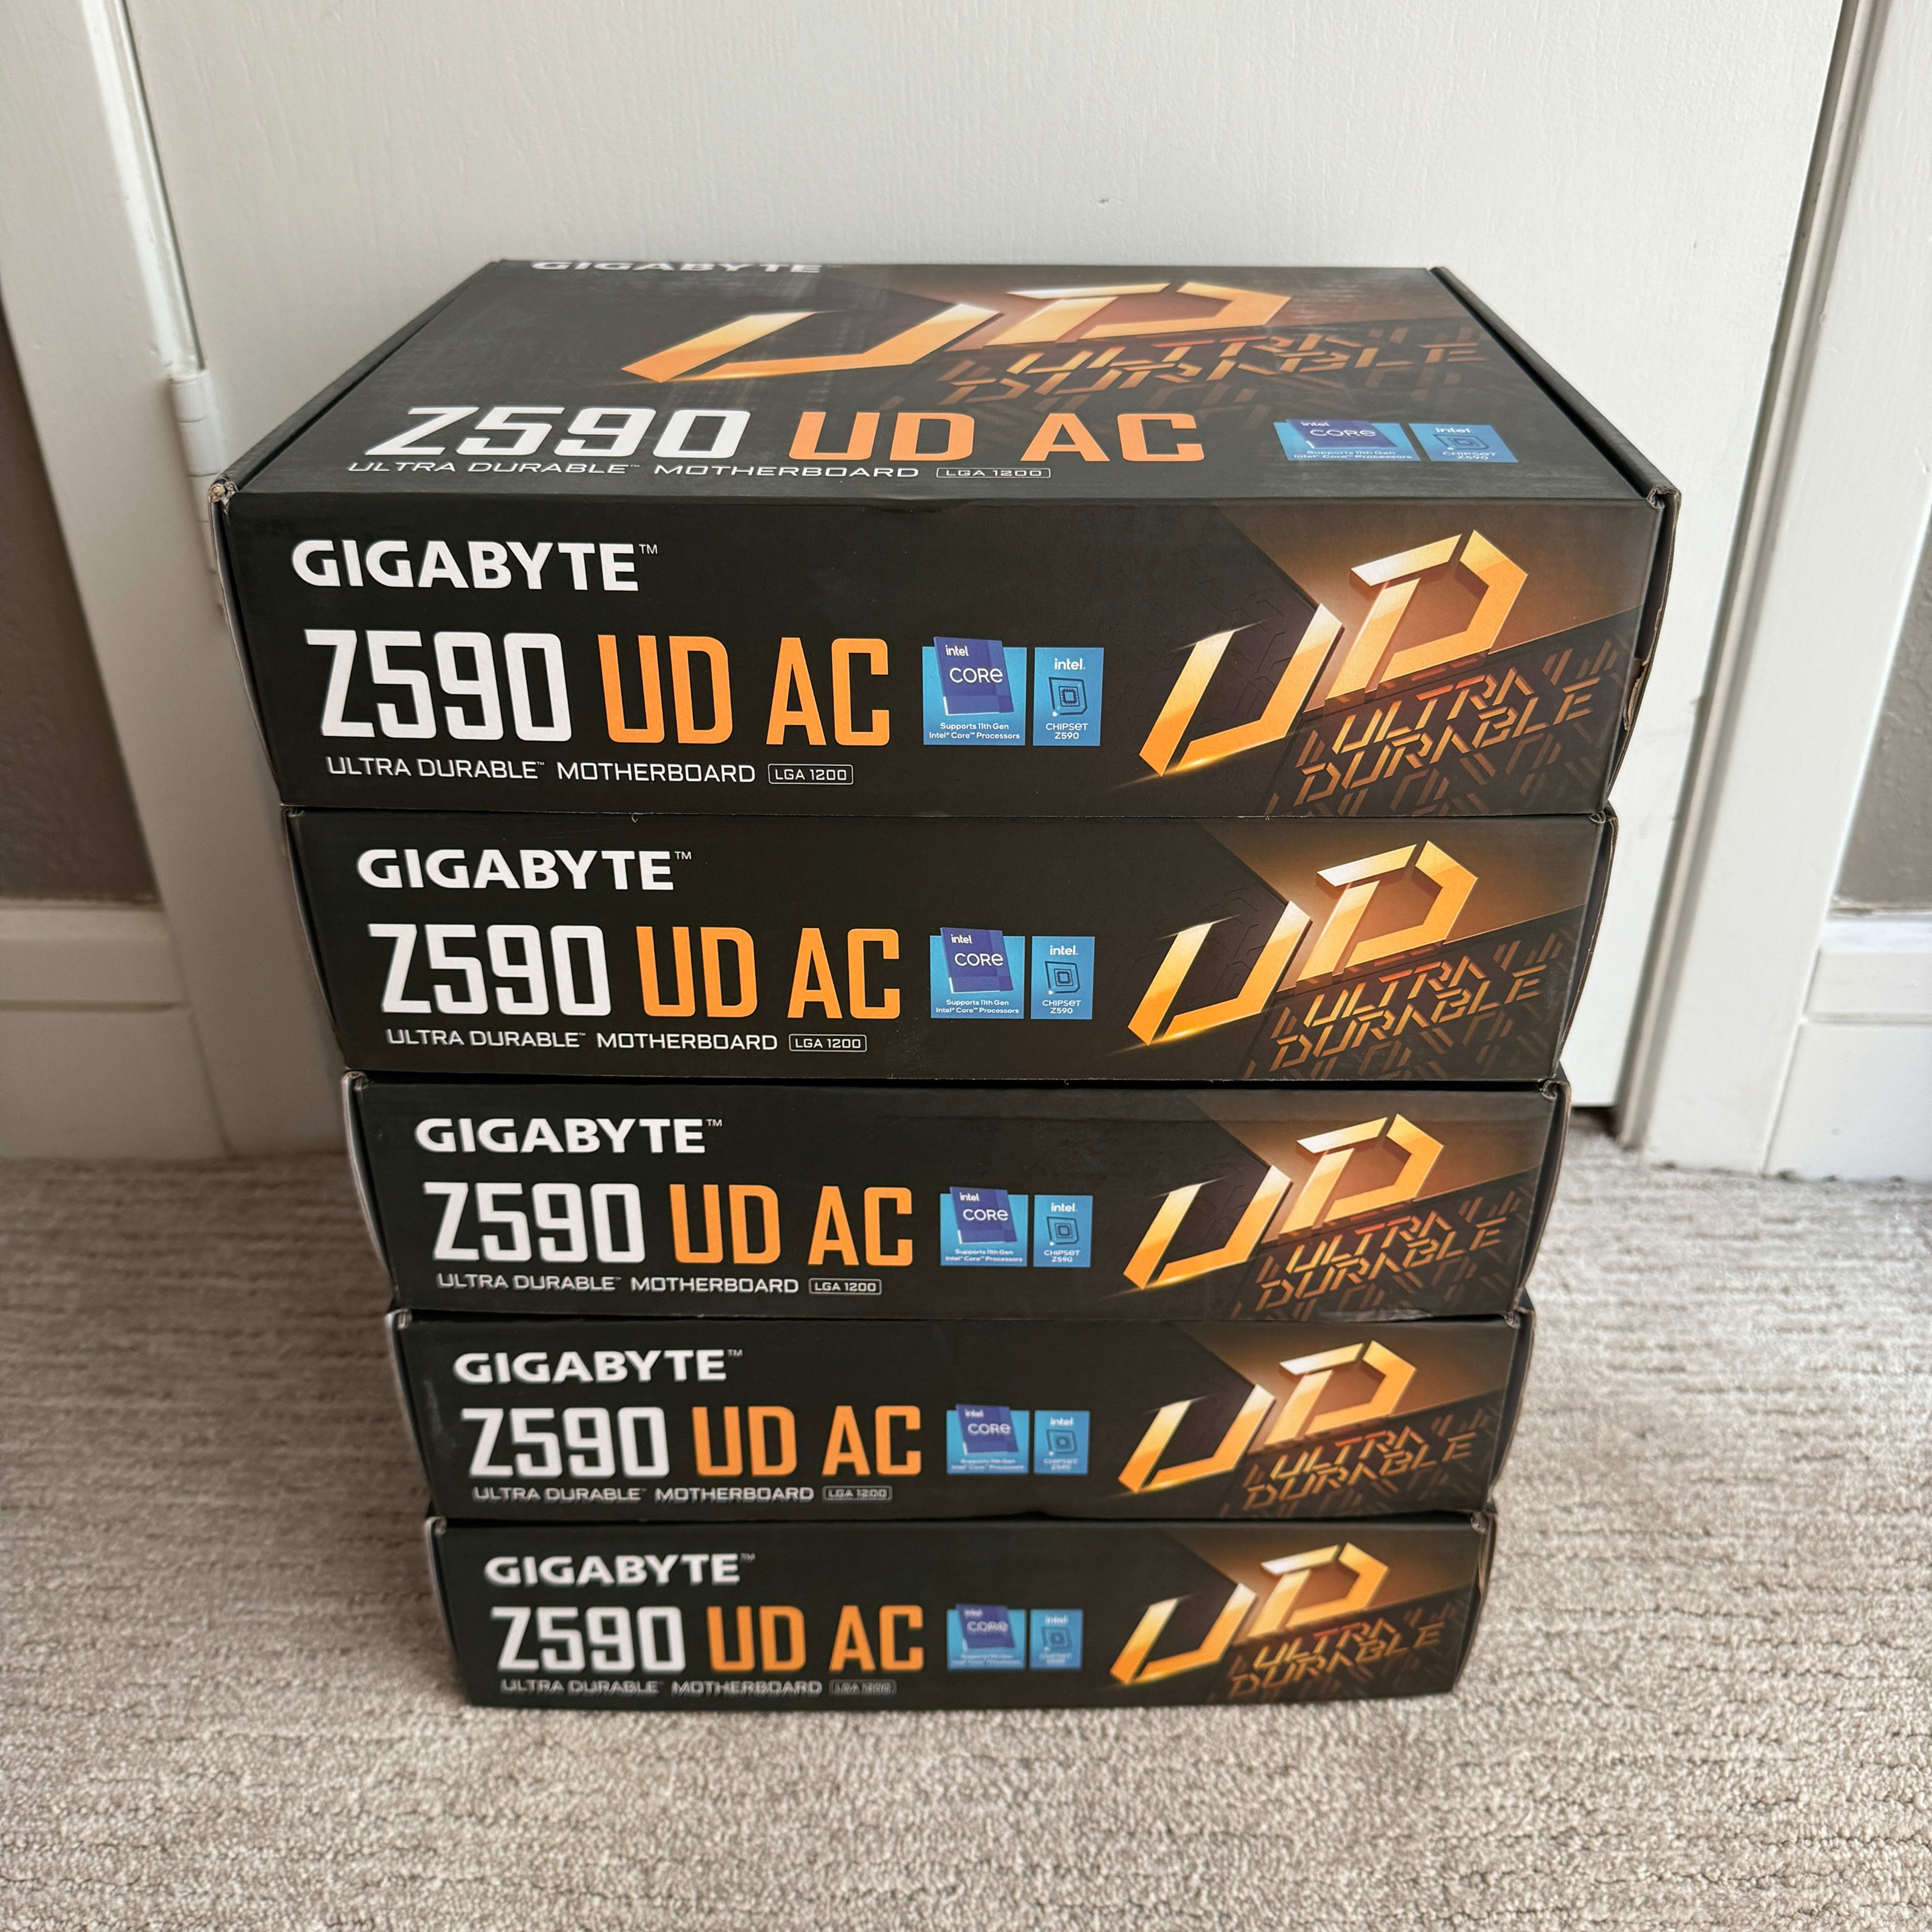 [5] Z590 UD AC LGA1200 Gigabyte Motherboards